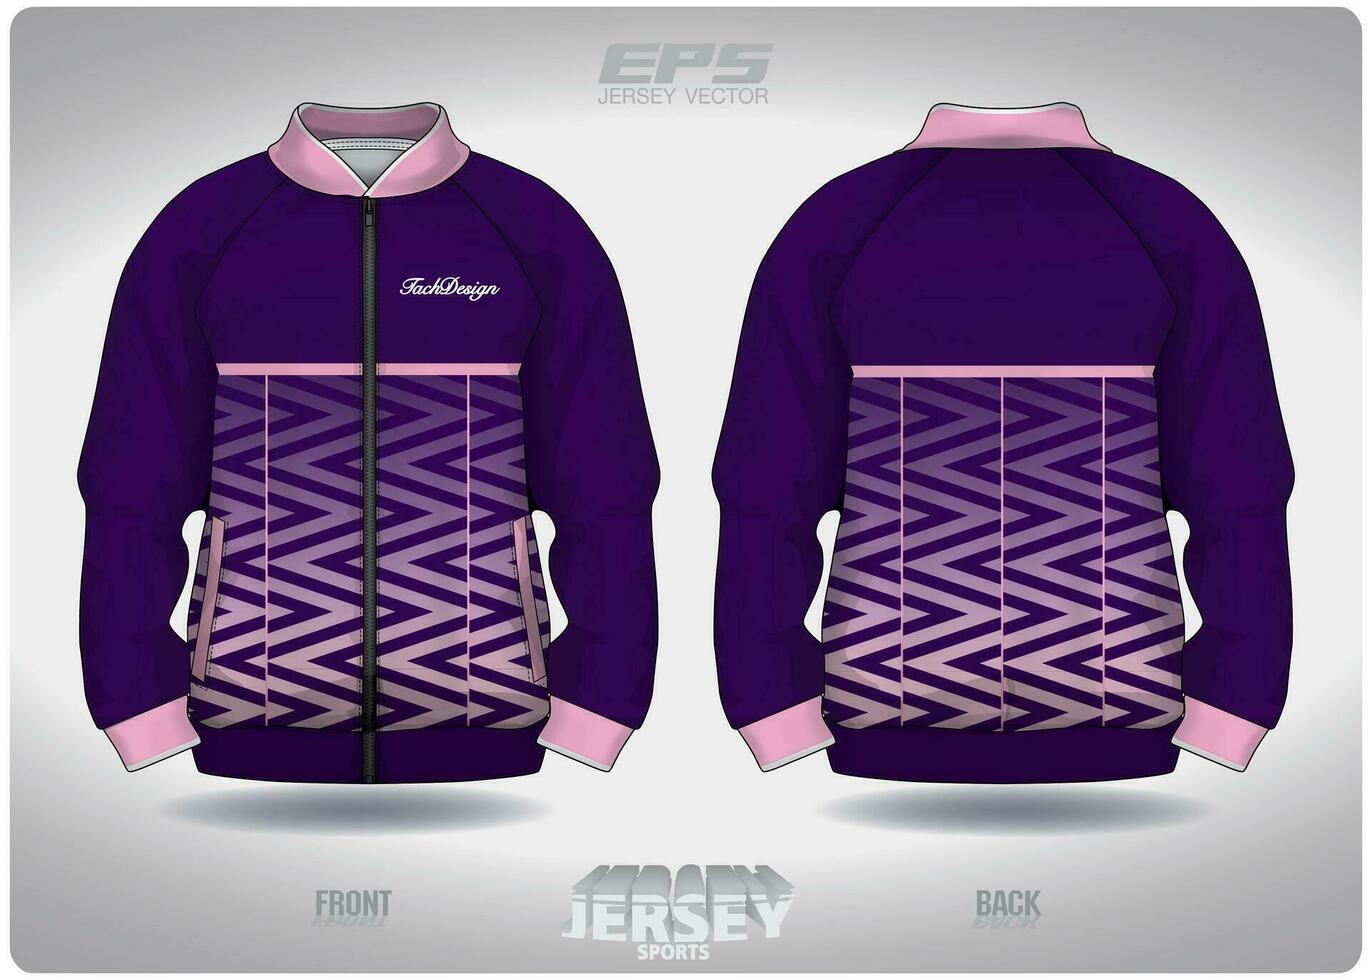 eps jersey sporter skjorta vektor.rosa och lila vågig mönster design, illustration, textil- bakgrund för sporter lång ärm Tröja vektor